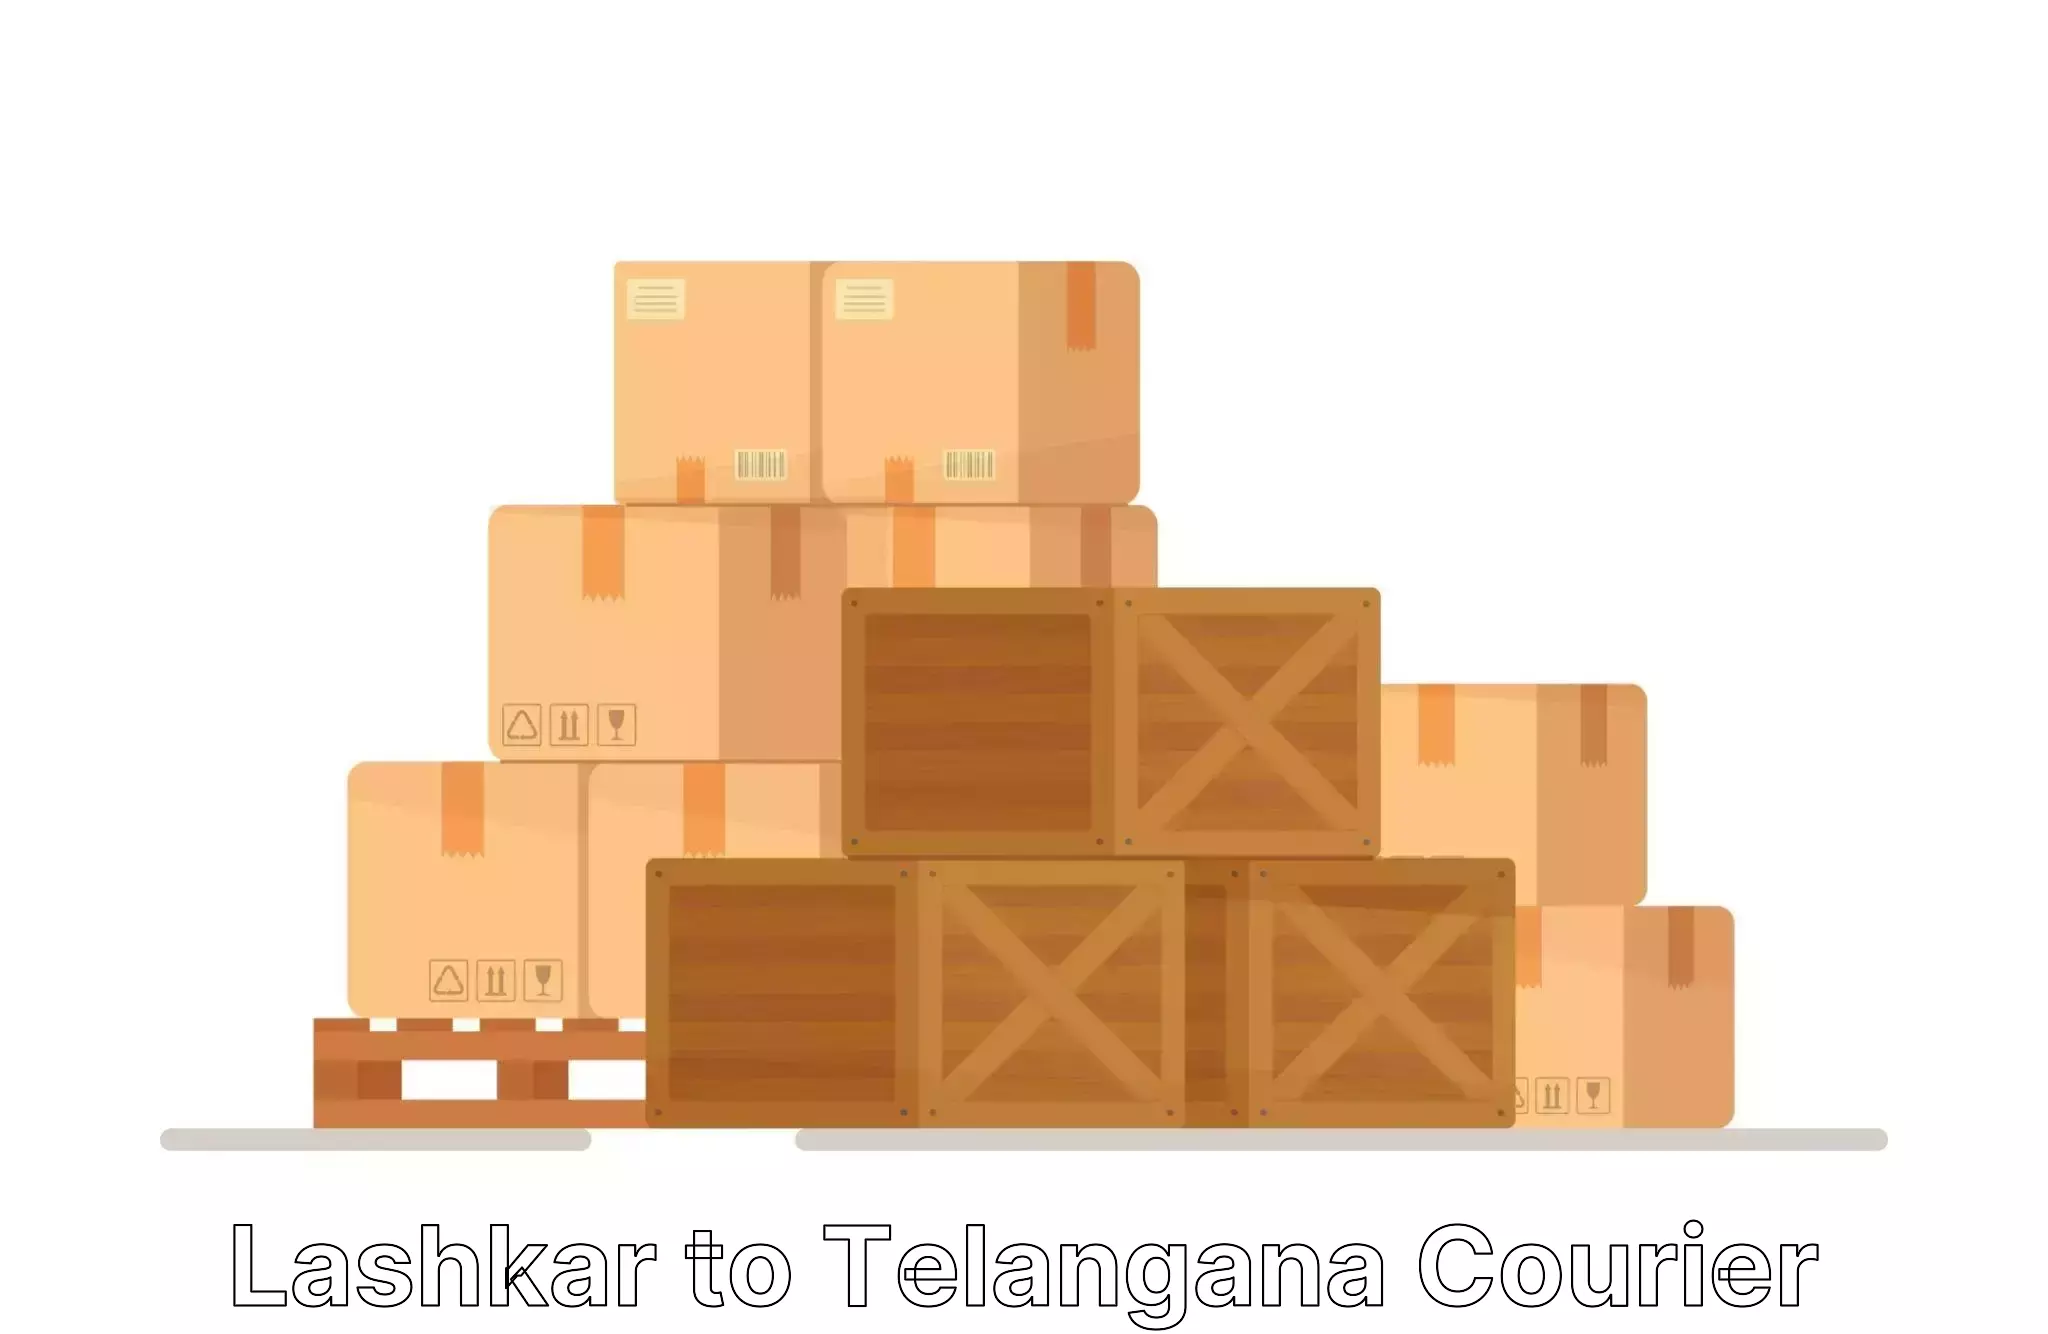 Packing and moving services Lashkar to Balanagar